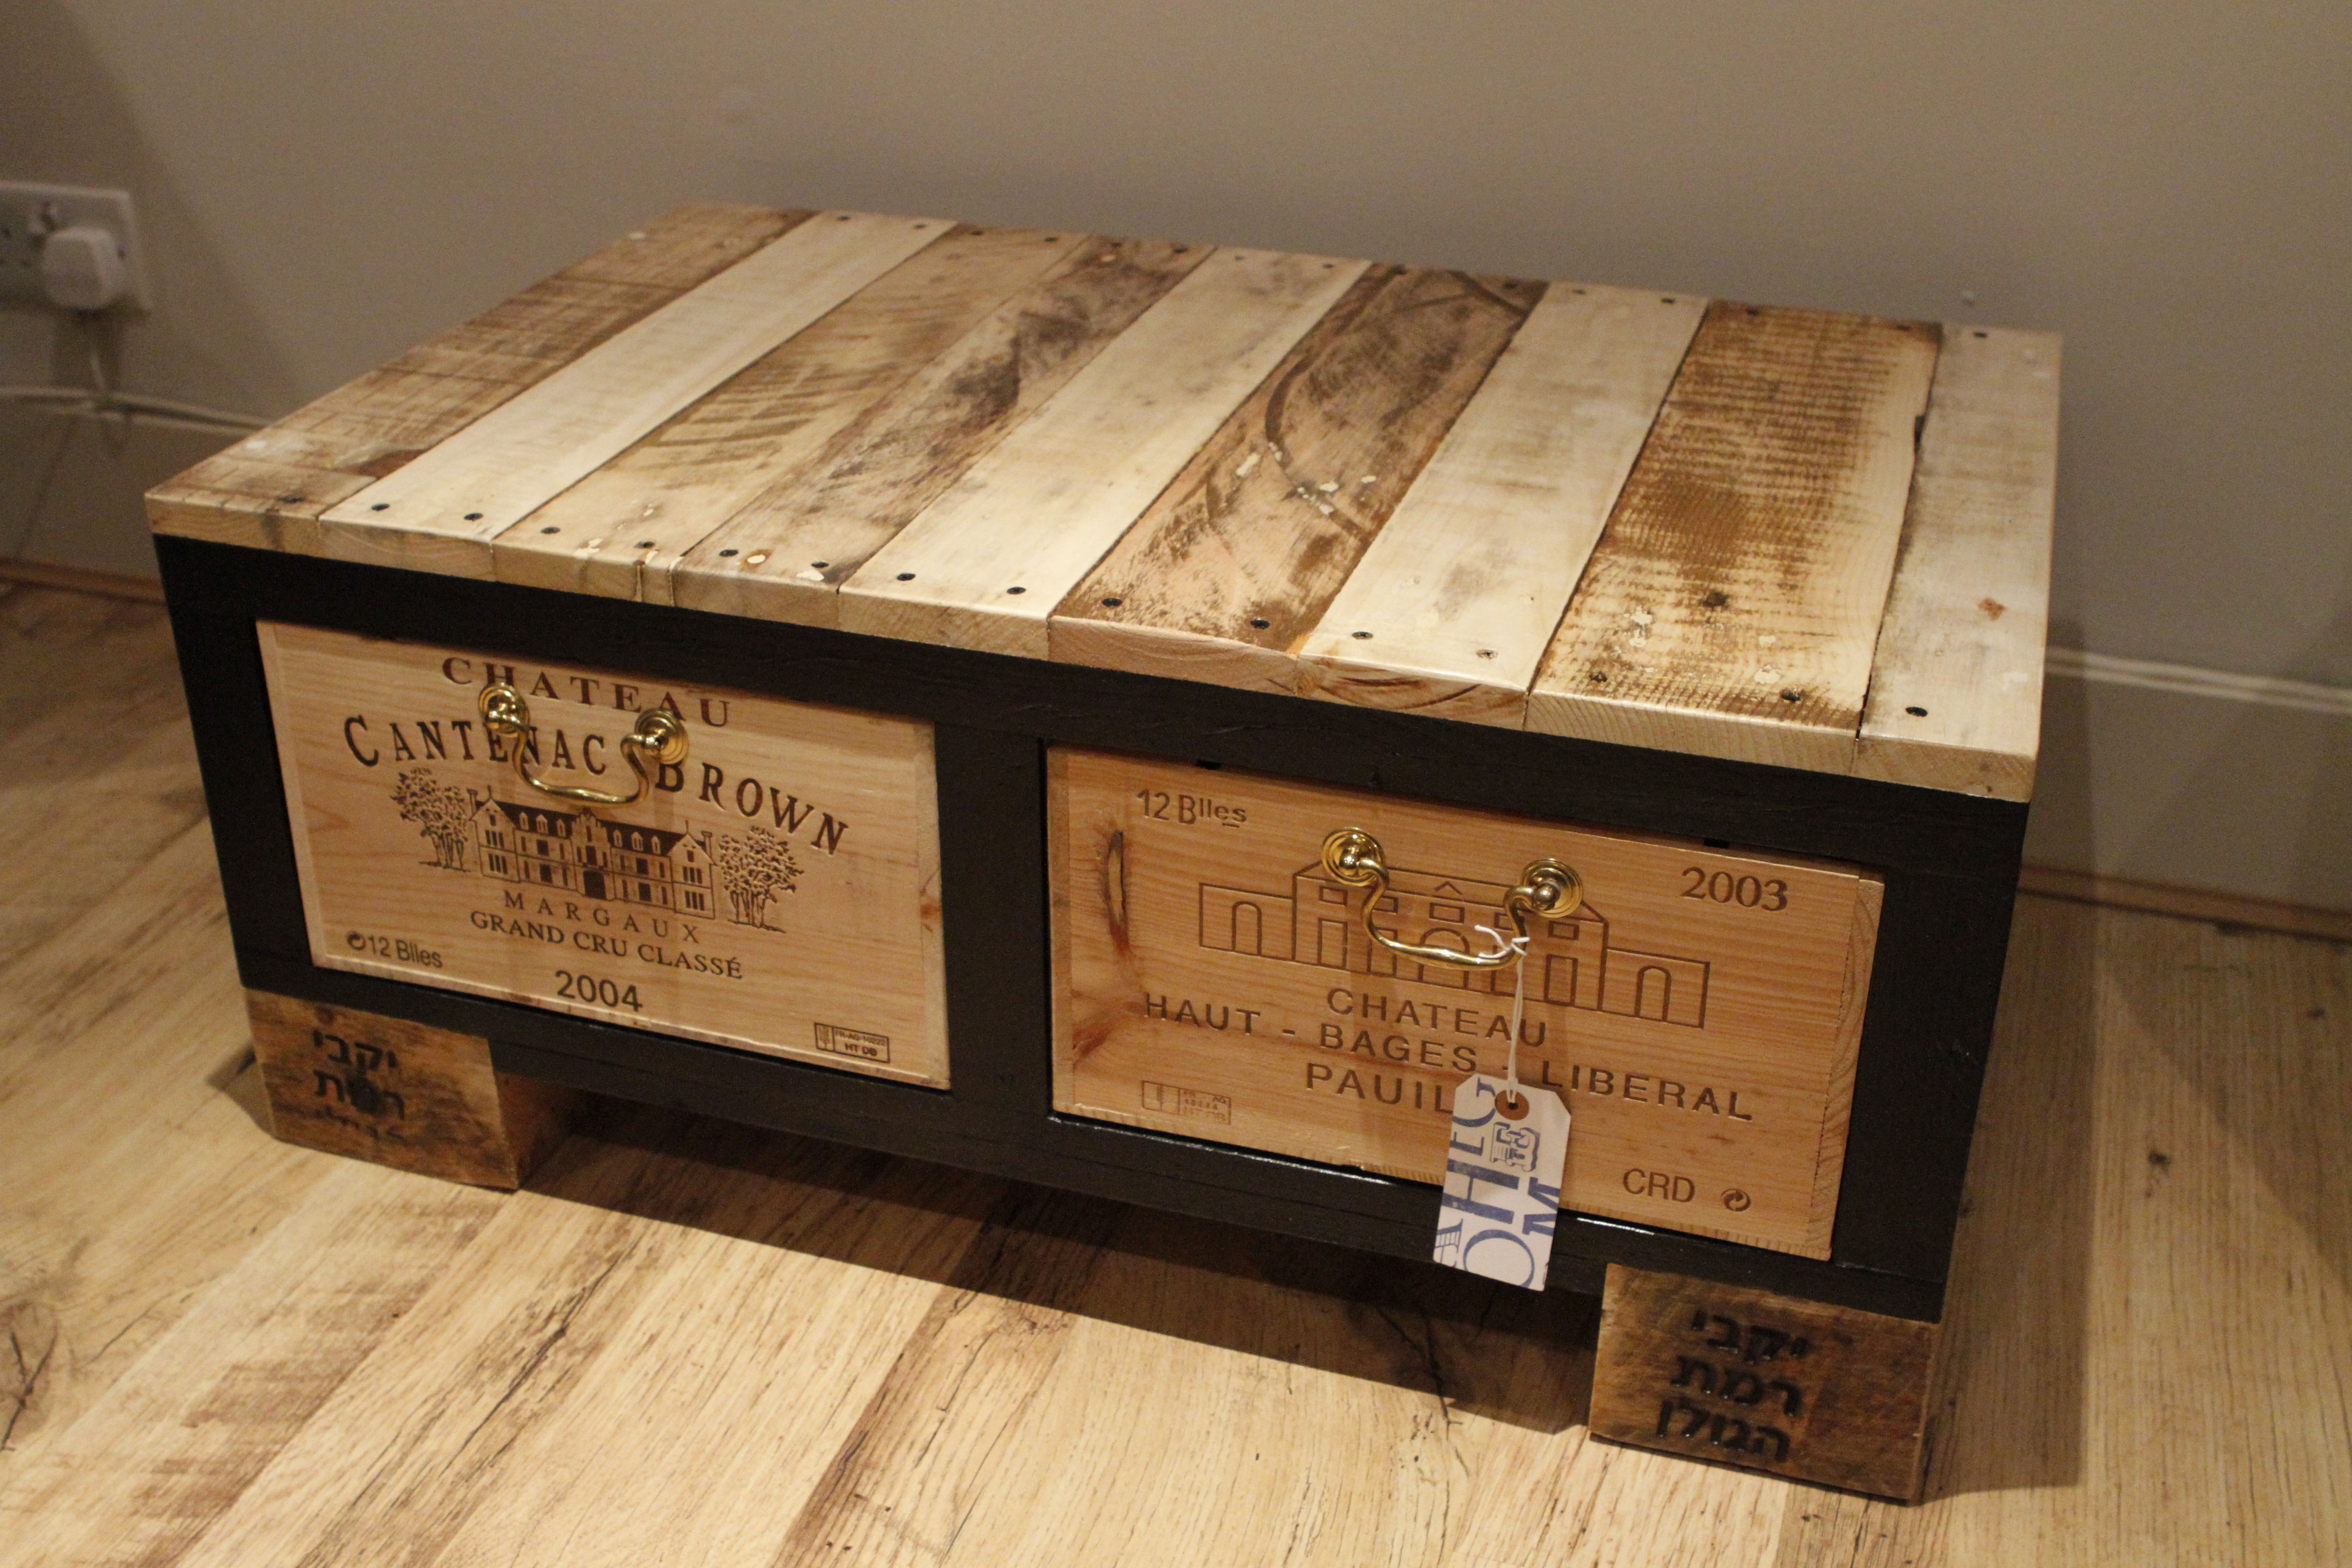 Coffee Table Wood Furniture